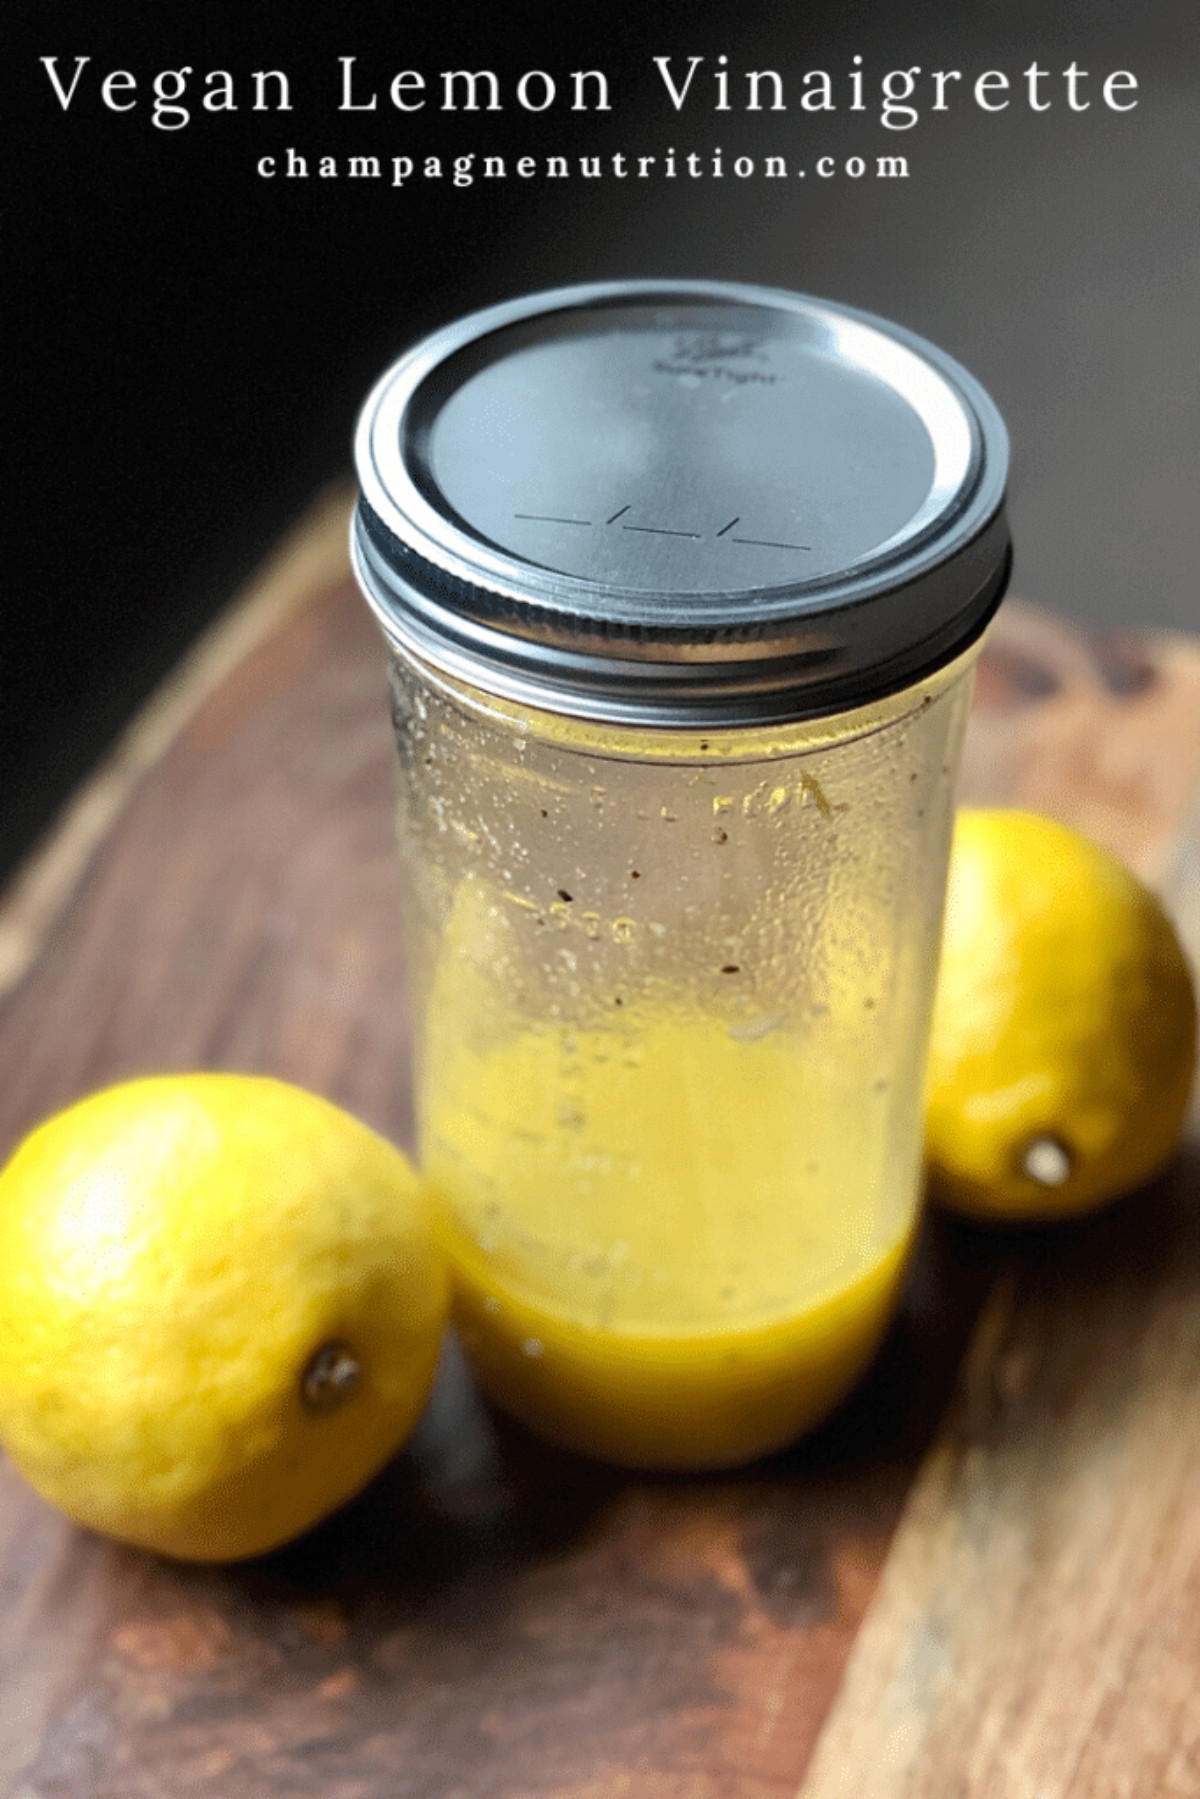 vegan lemon vinaigrette in a baller jar with two lemons on the side